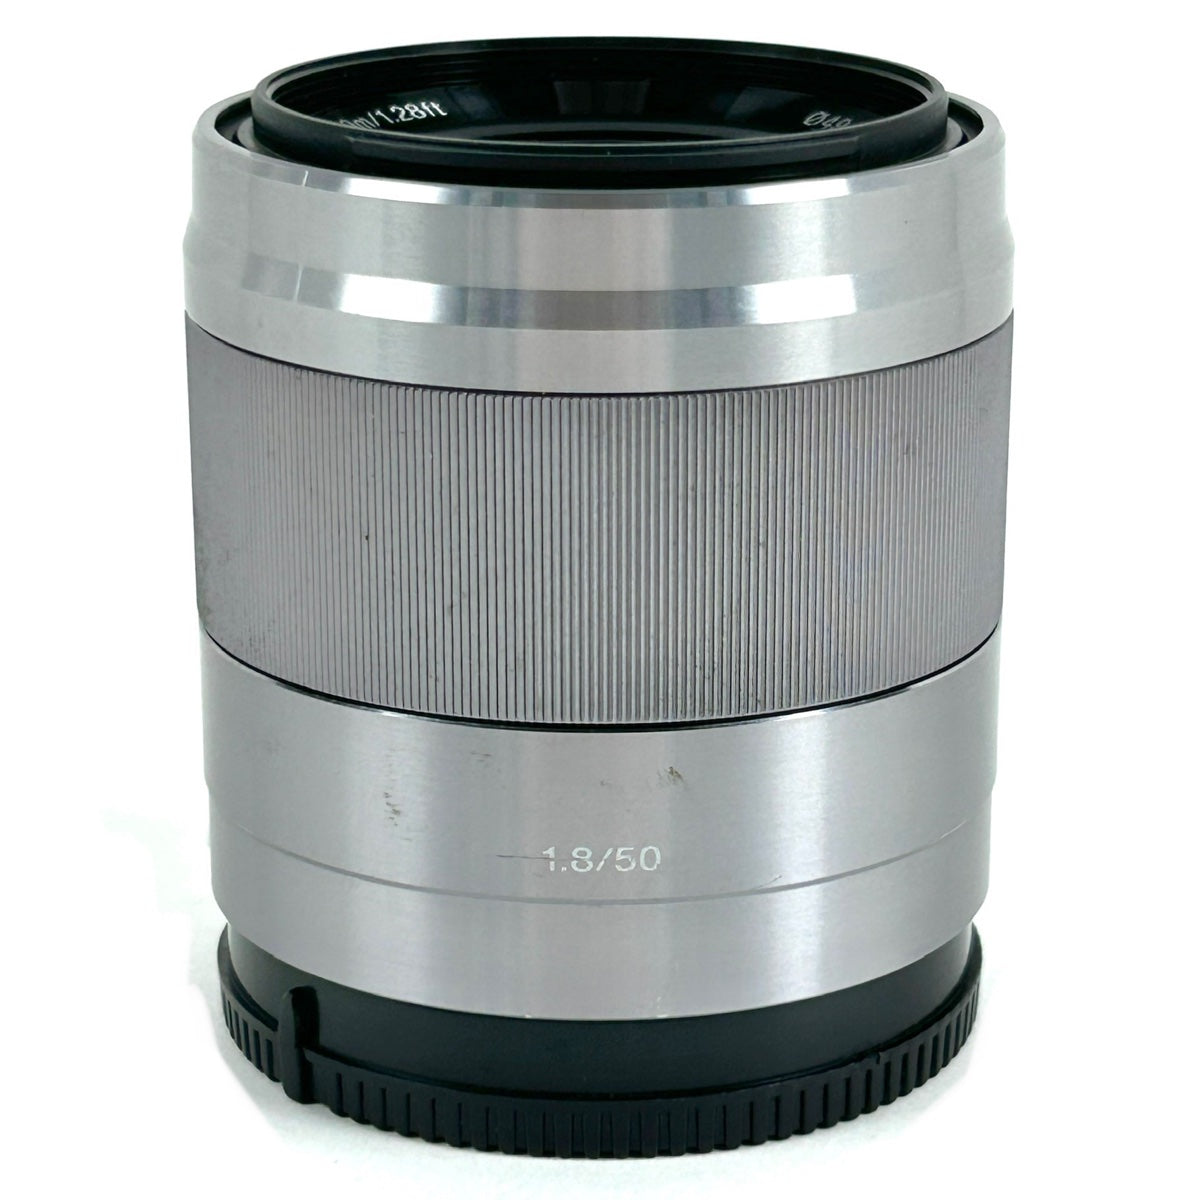 SALE送料無料ソニー SONY E 50mm F1.8 OSS(ブラック) SEL50F18 レンズ(単焦点)